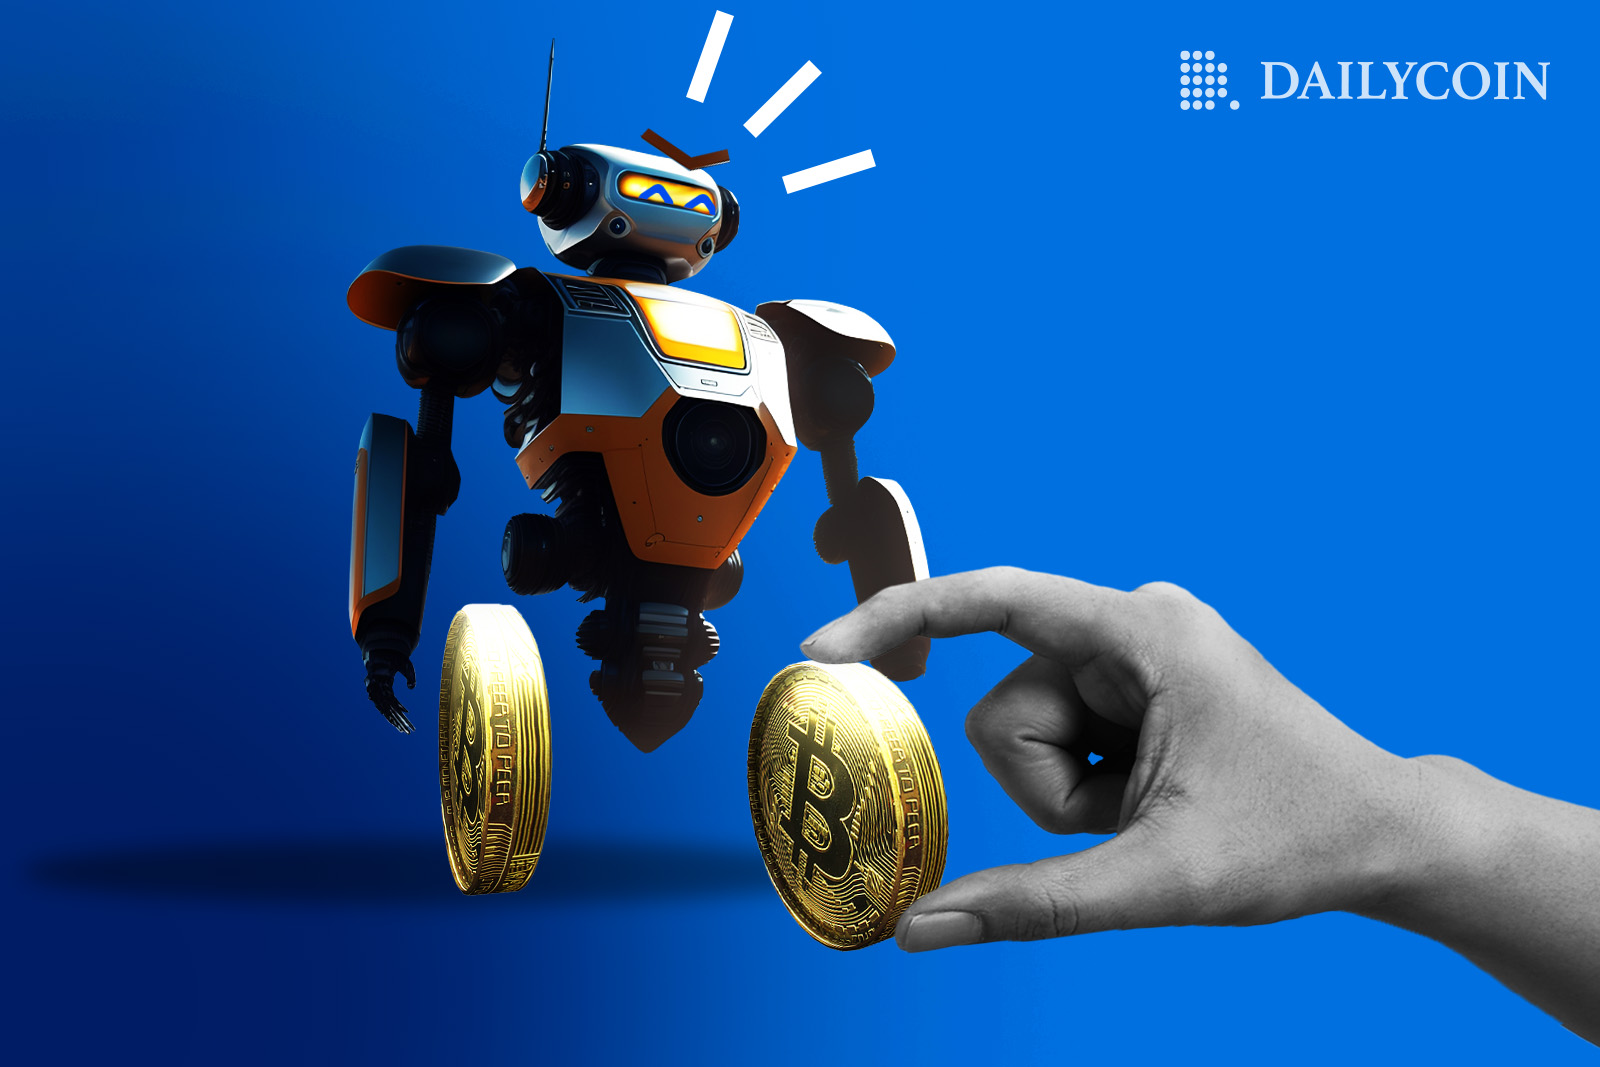 Tiny robot is given a Bitcoin crypto coin.